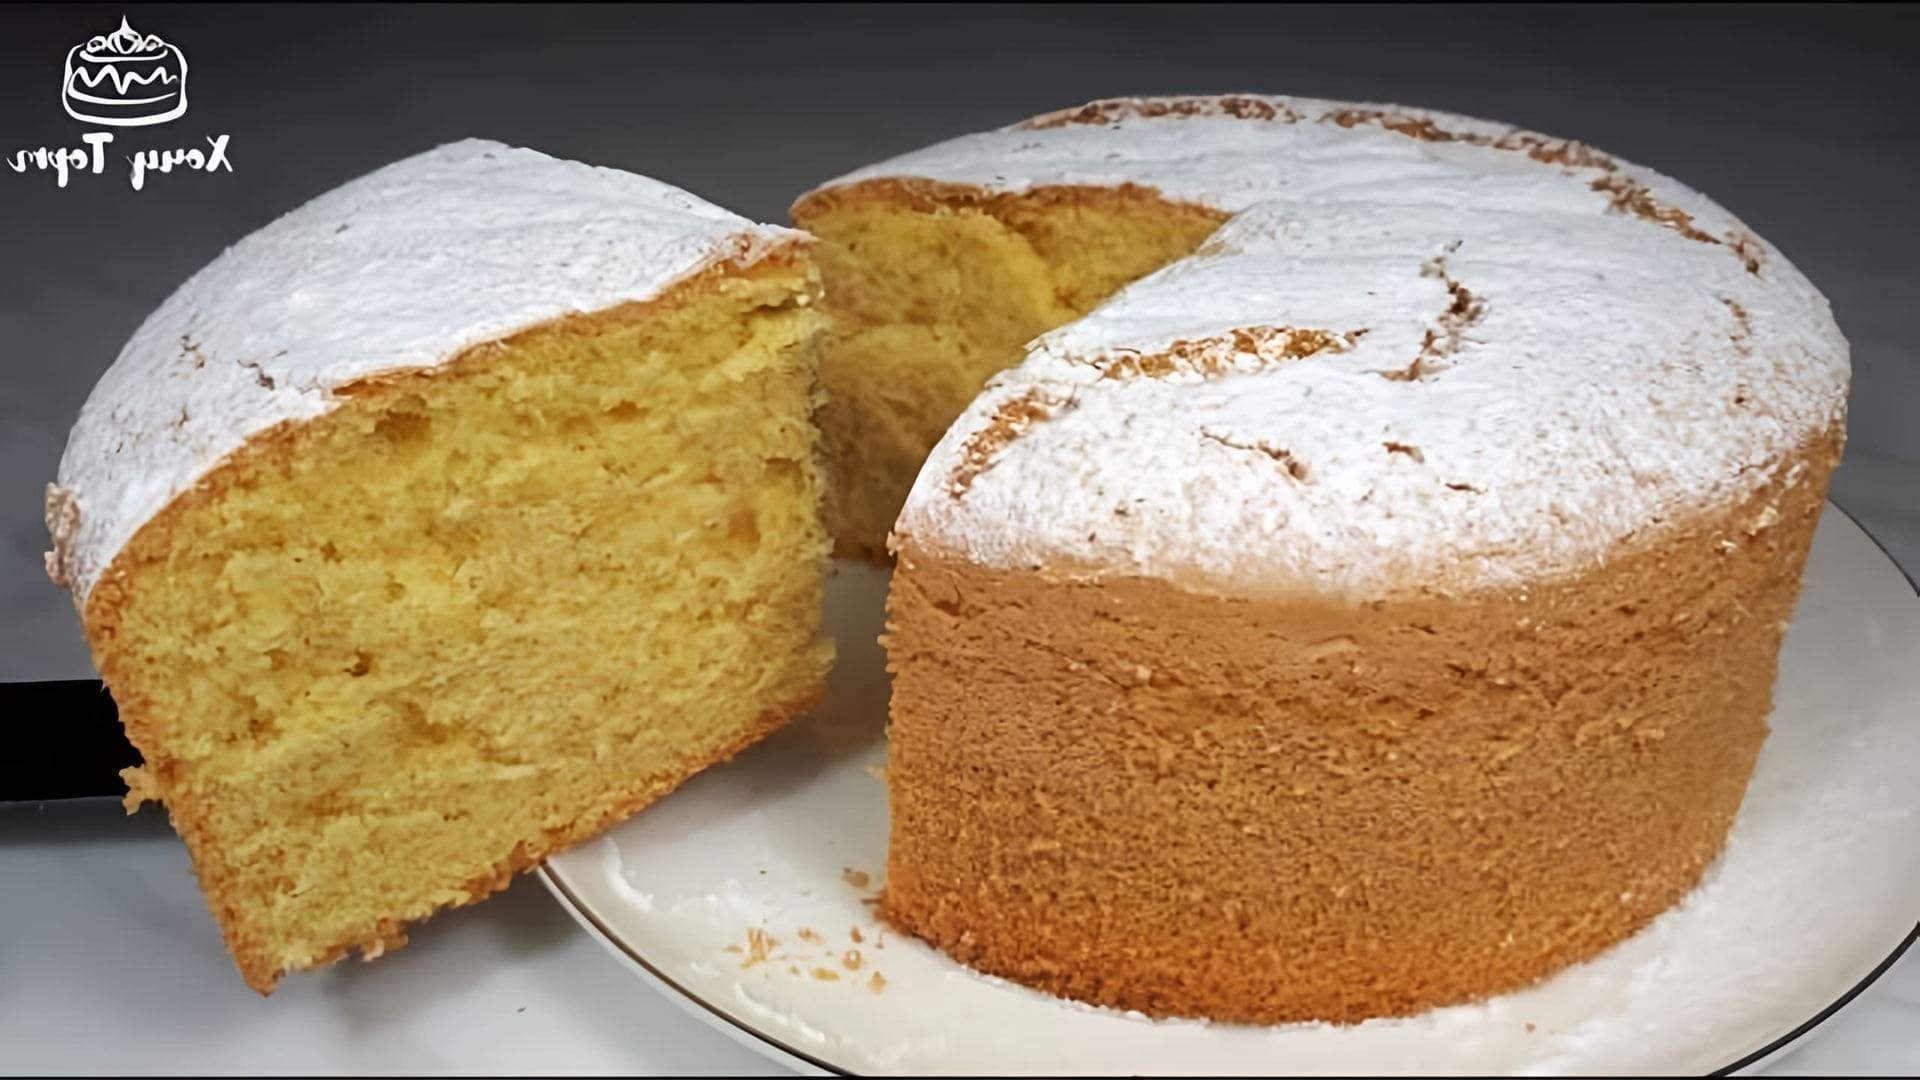 В данном видео демонстрируется рецепт приготовления бисквита на желтках